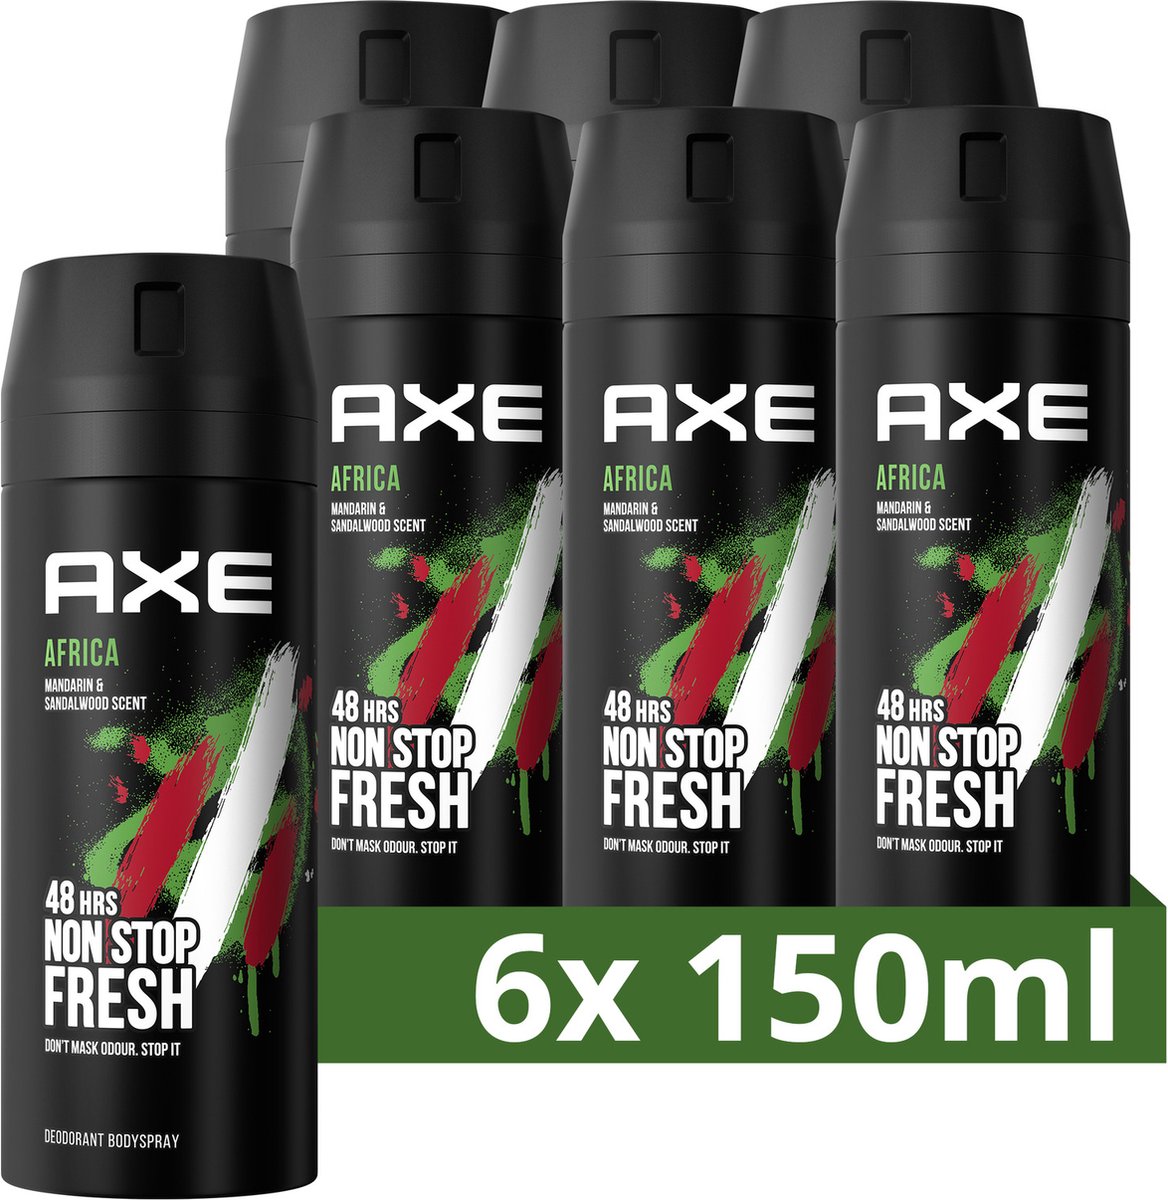 AXE Africa Deodorant Bodyspray - 6 x 150 ml - Voordeelverpakking - Axe